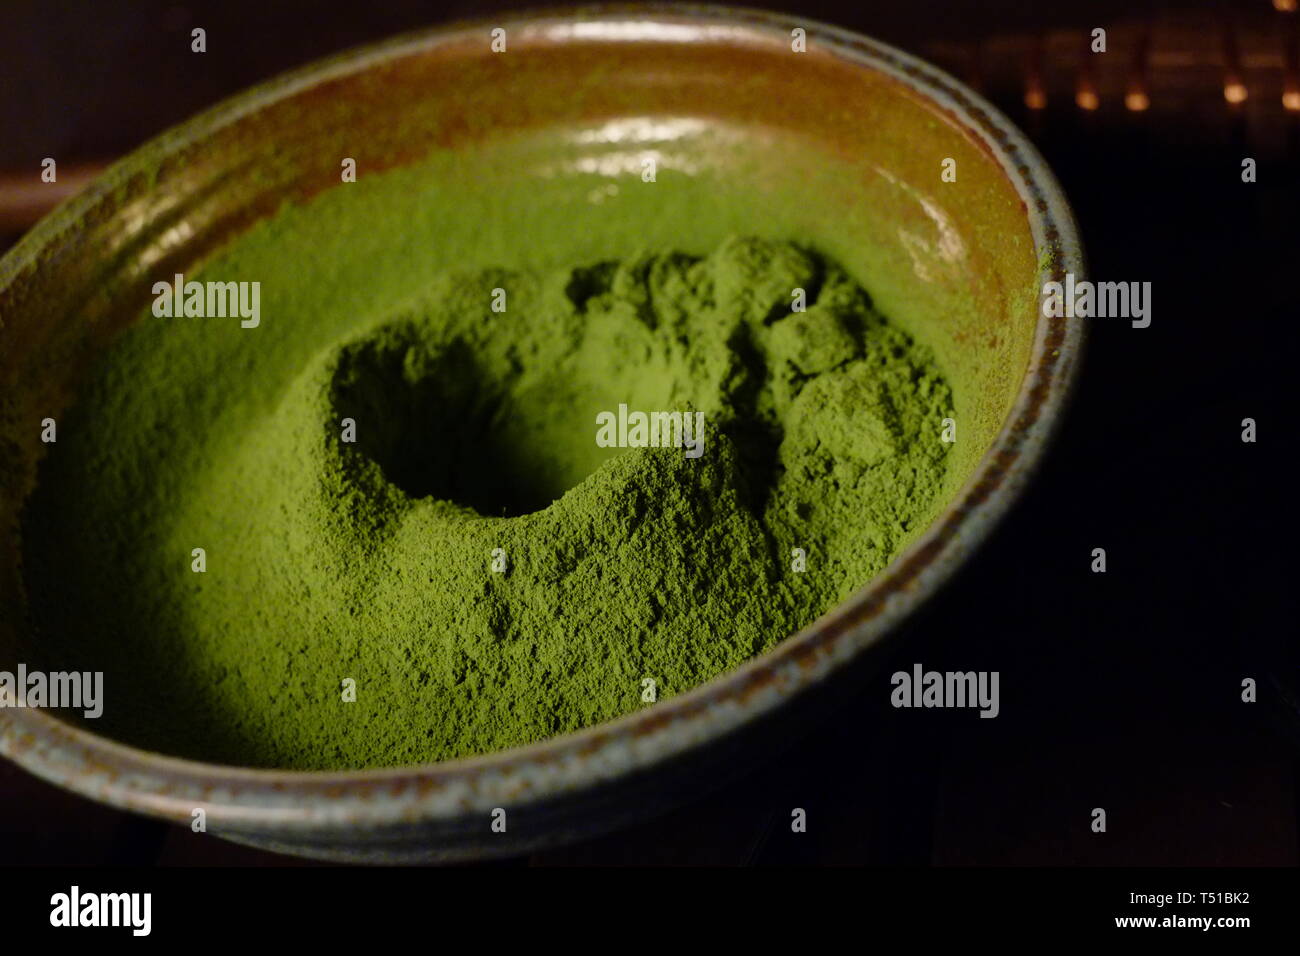 Matcha giapponese in polvere di tè verde in una ciotola. Il tè, che viene utilizzato nella cerimonia del tè giapponese, è noto per le sue proprietà di salute e di sapore amaro. Foto Stock